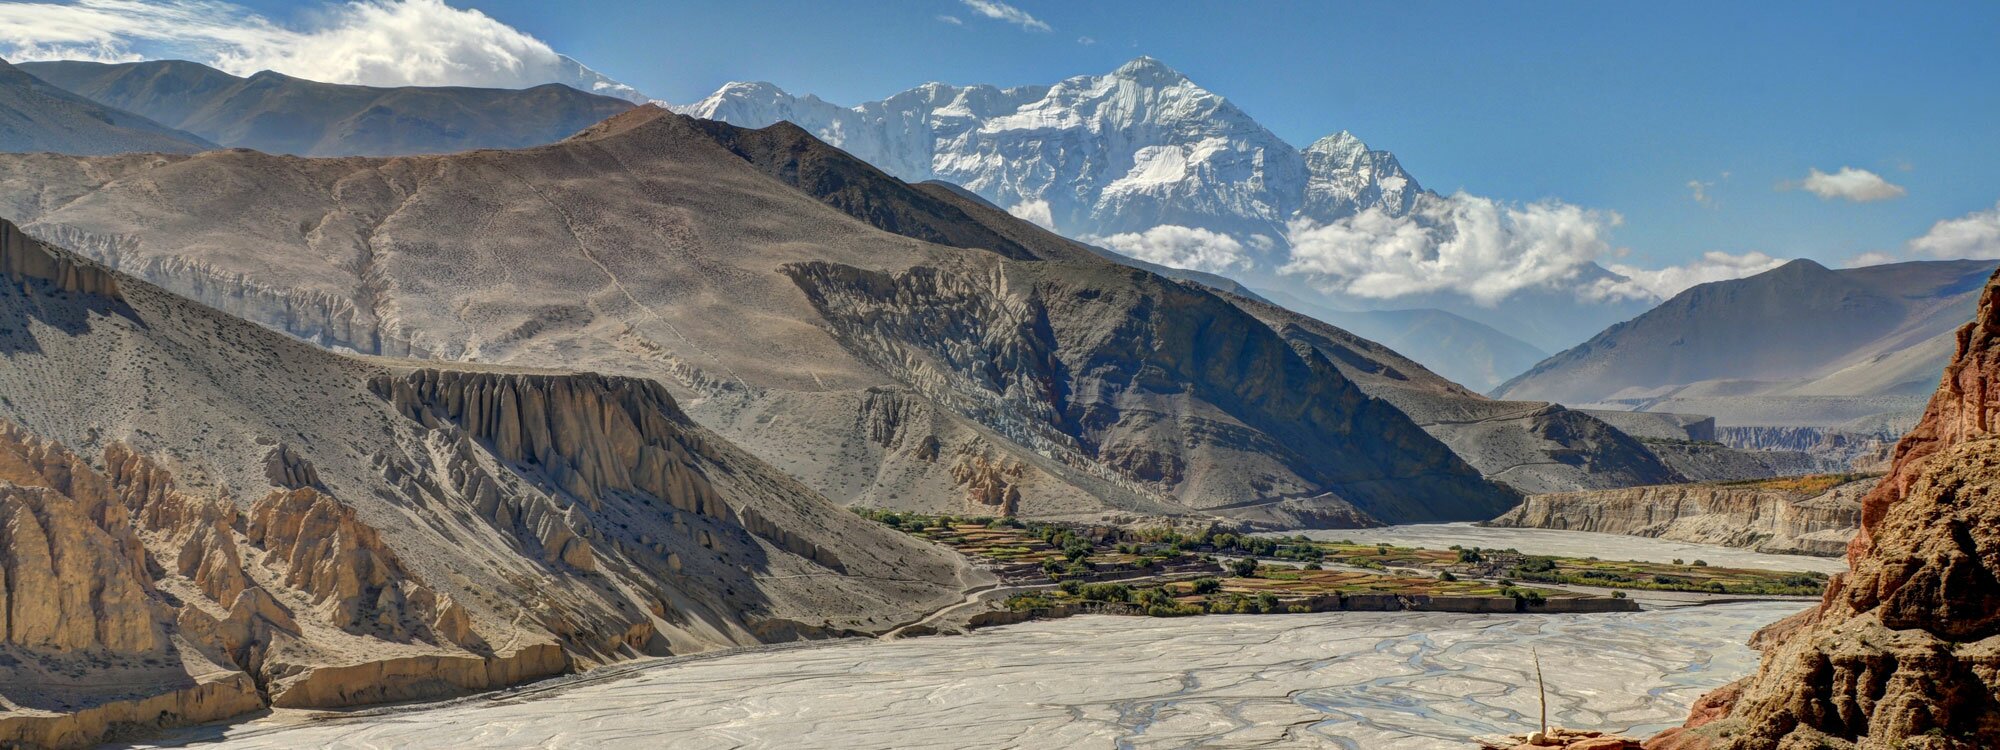 Kali Gandaki Image